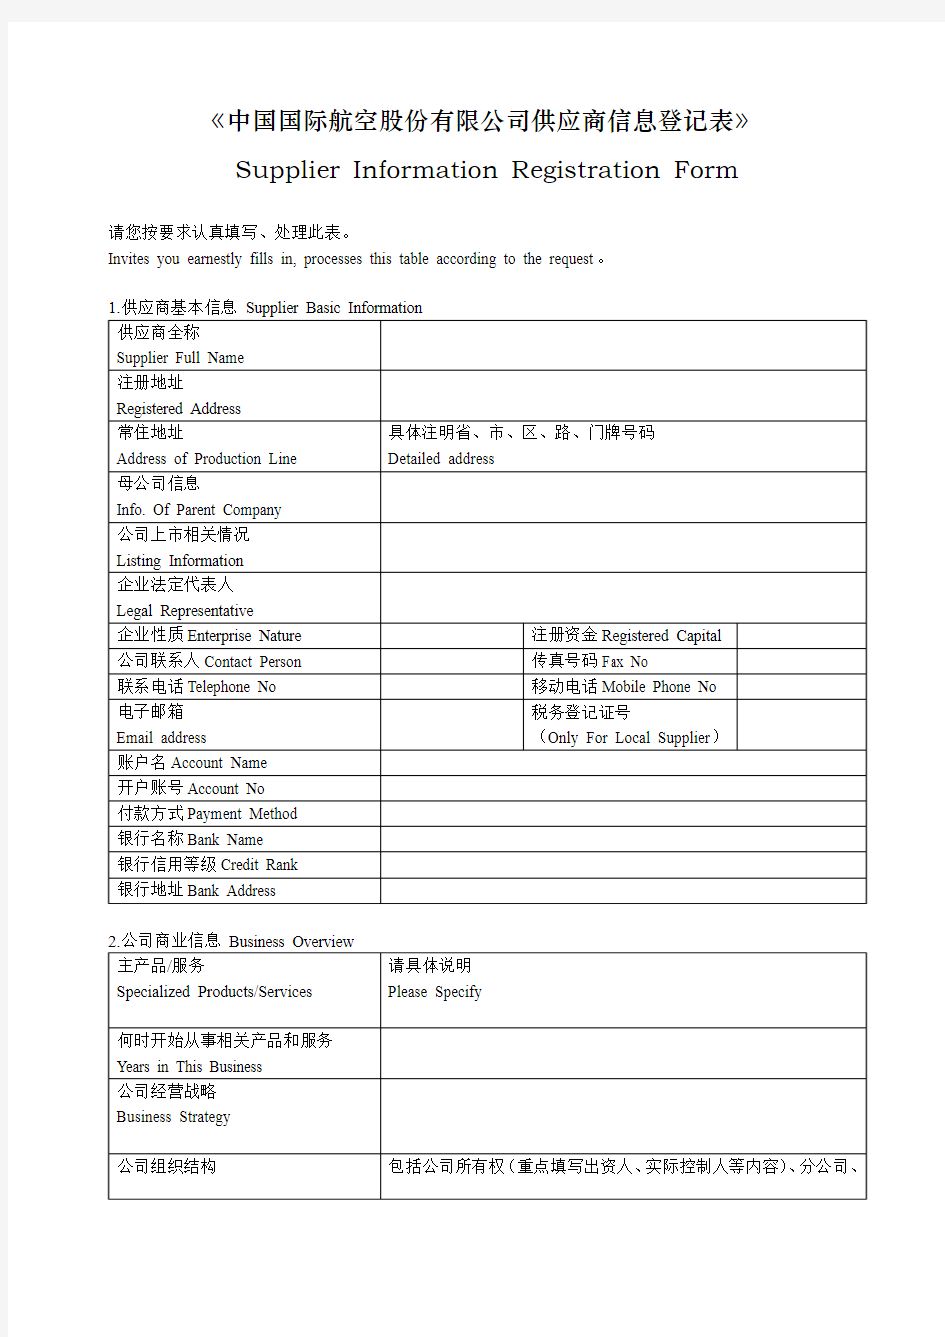 中国国际航空股份有限公司供应商信息登记表